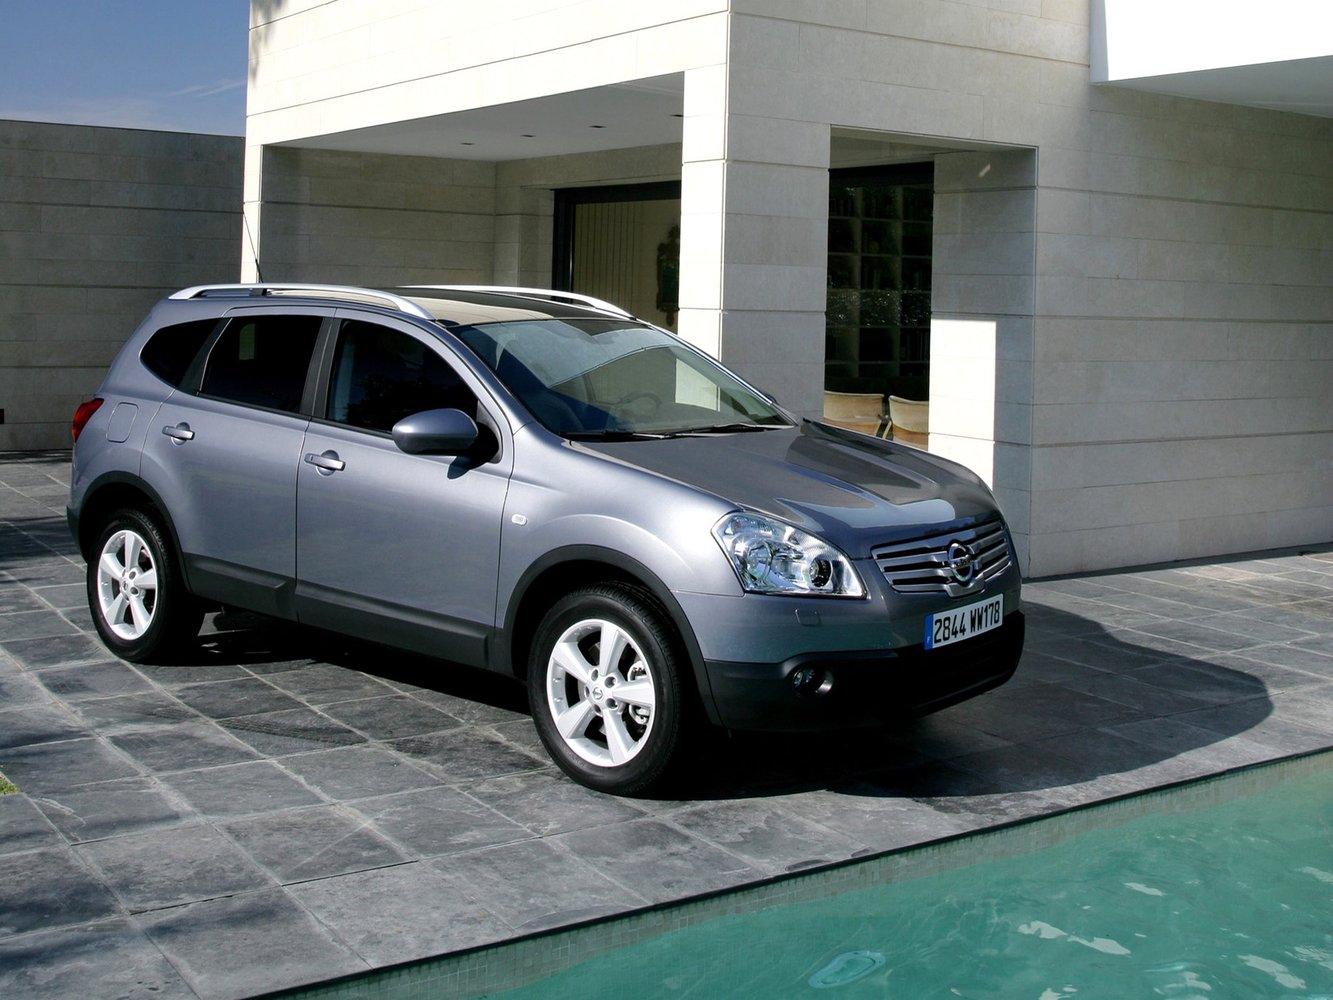 Nissan Qashqai+2 2007 - 2010